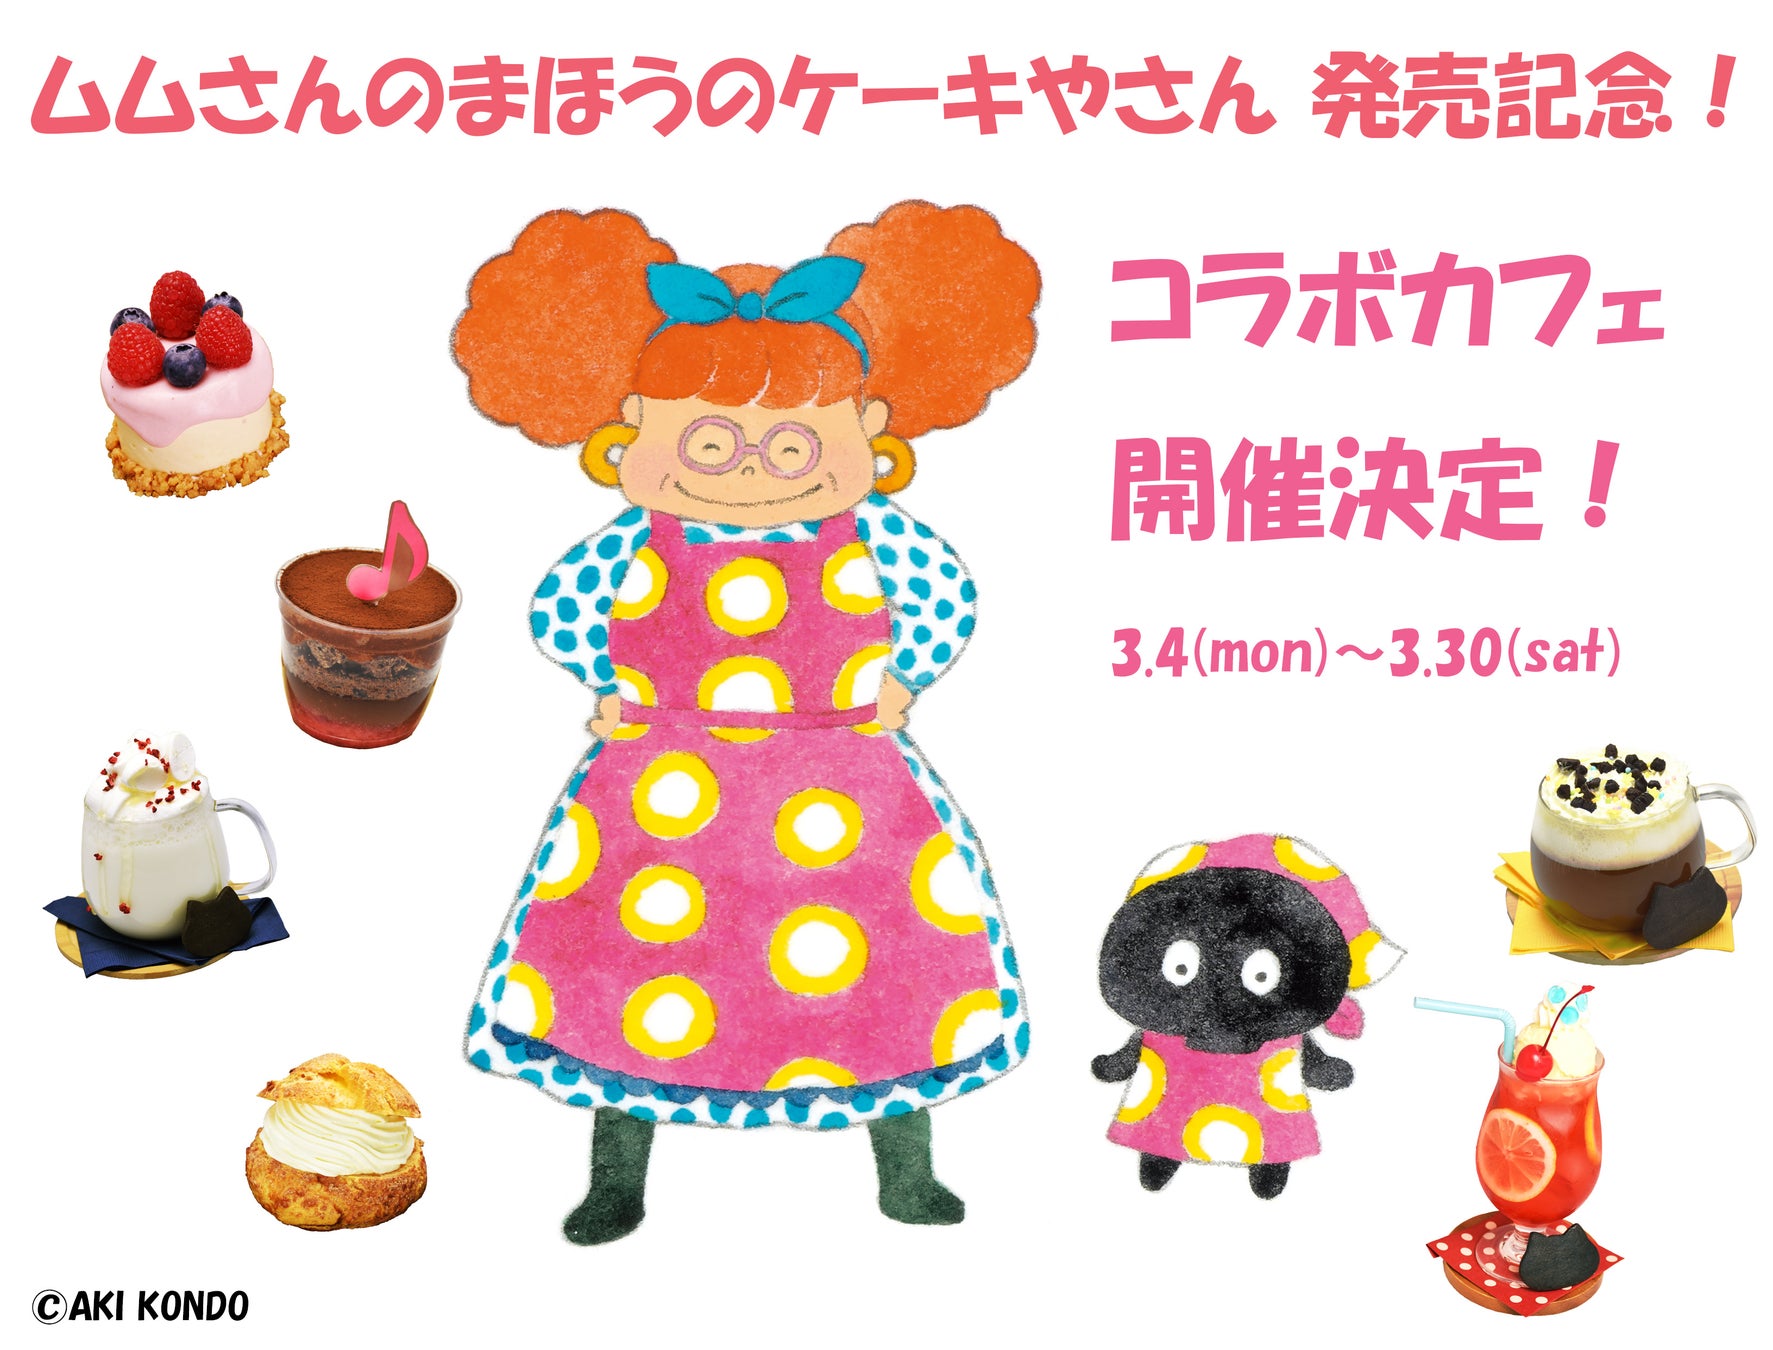 【リーガロイヤルホテル東京】お子様の成長を祝い、ご家族で過ごすたいせつなひとときを彩る「ひな祭りケーキ」